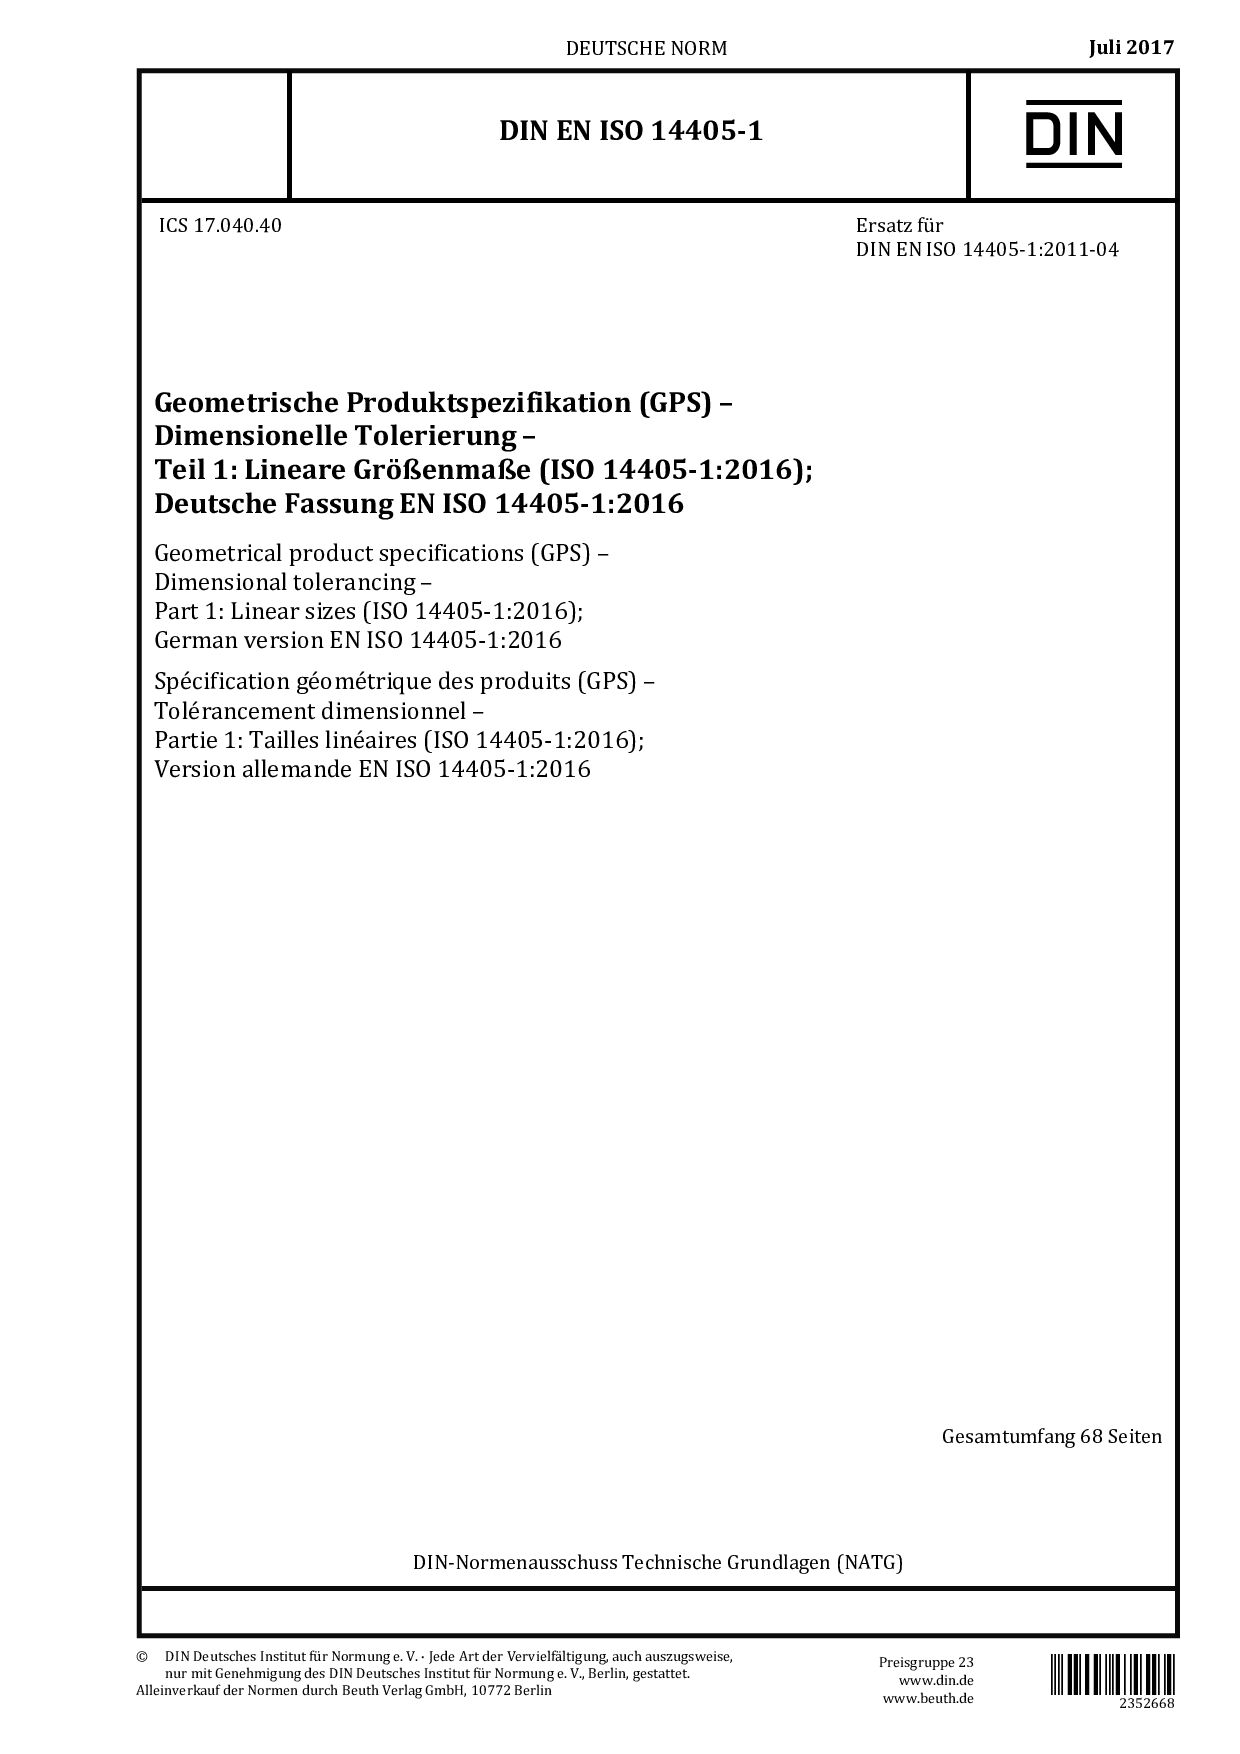 DIN EN ISO 14405-1:2017封面图